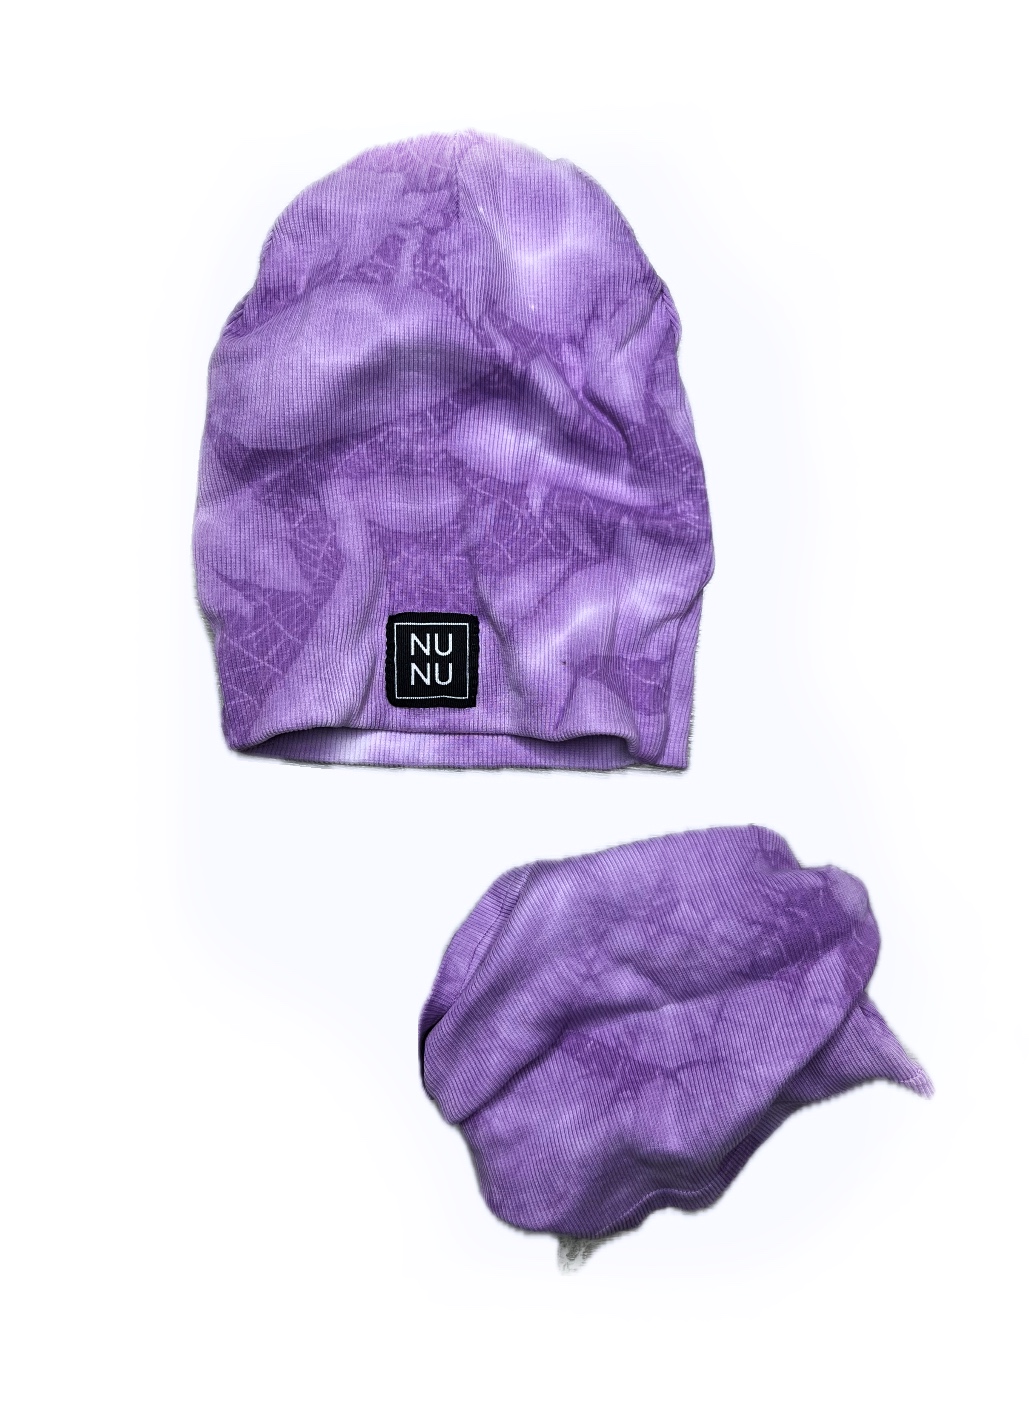 Čepice Nunu s nákrčníkem, violet